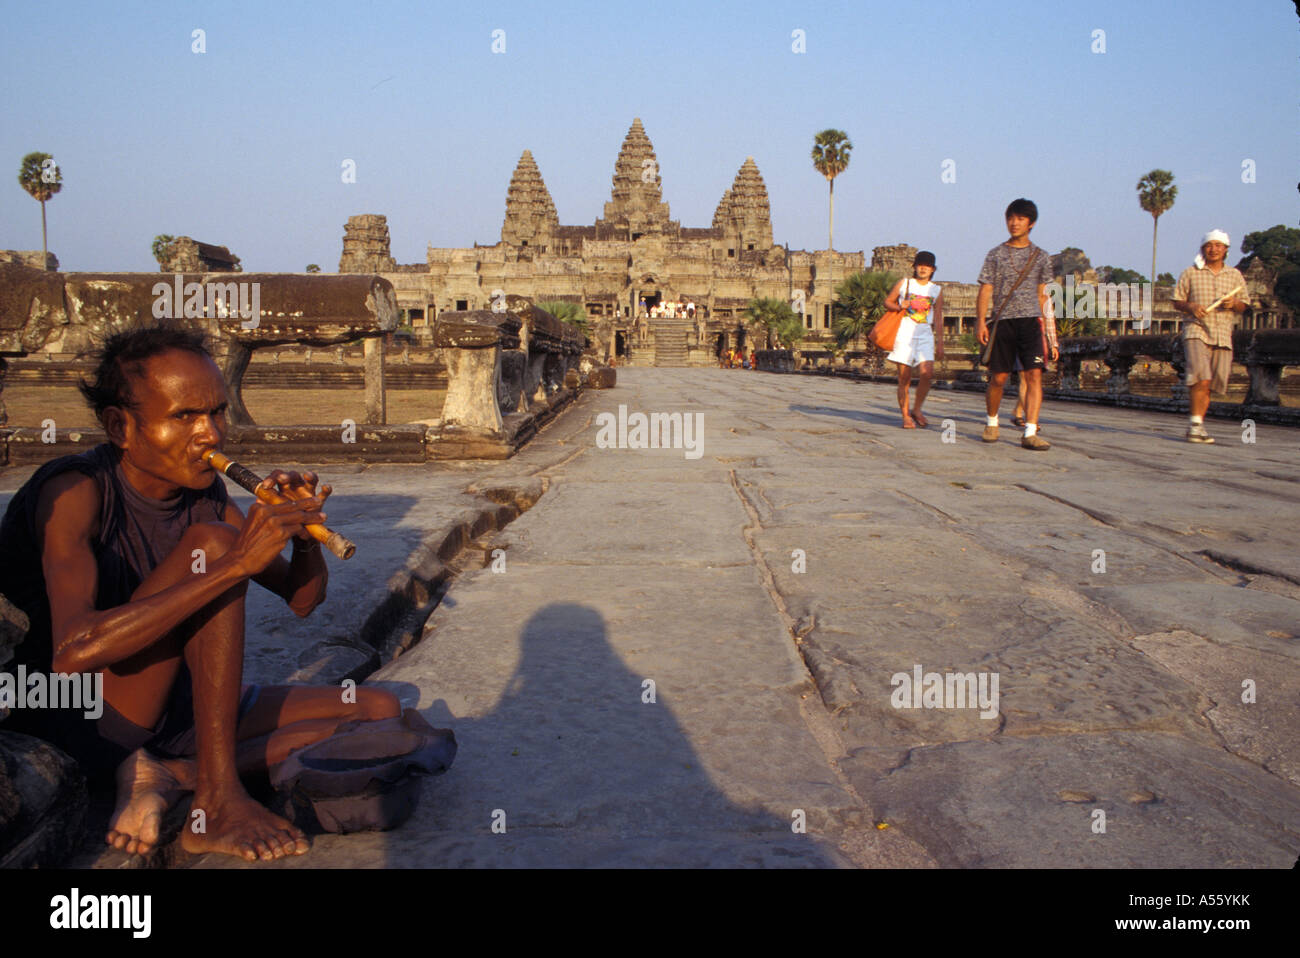 Painet ix1821 Cambodge mendiant jouant flute touristes passent par les temples d'angkor wat siem reap au pays en développement, de pays moins Banque D'Images